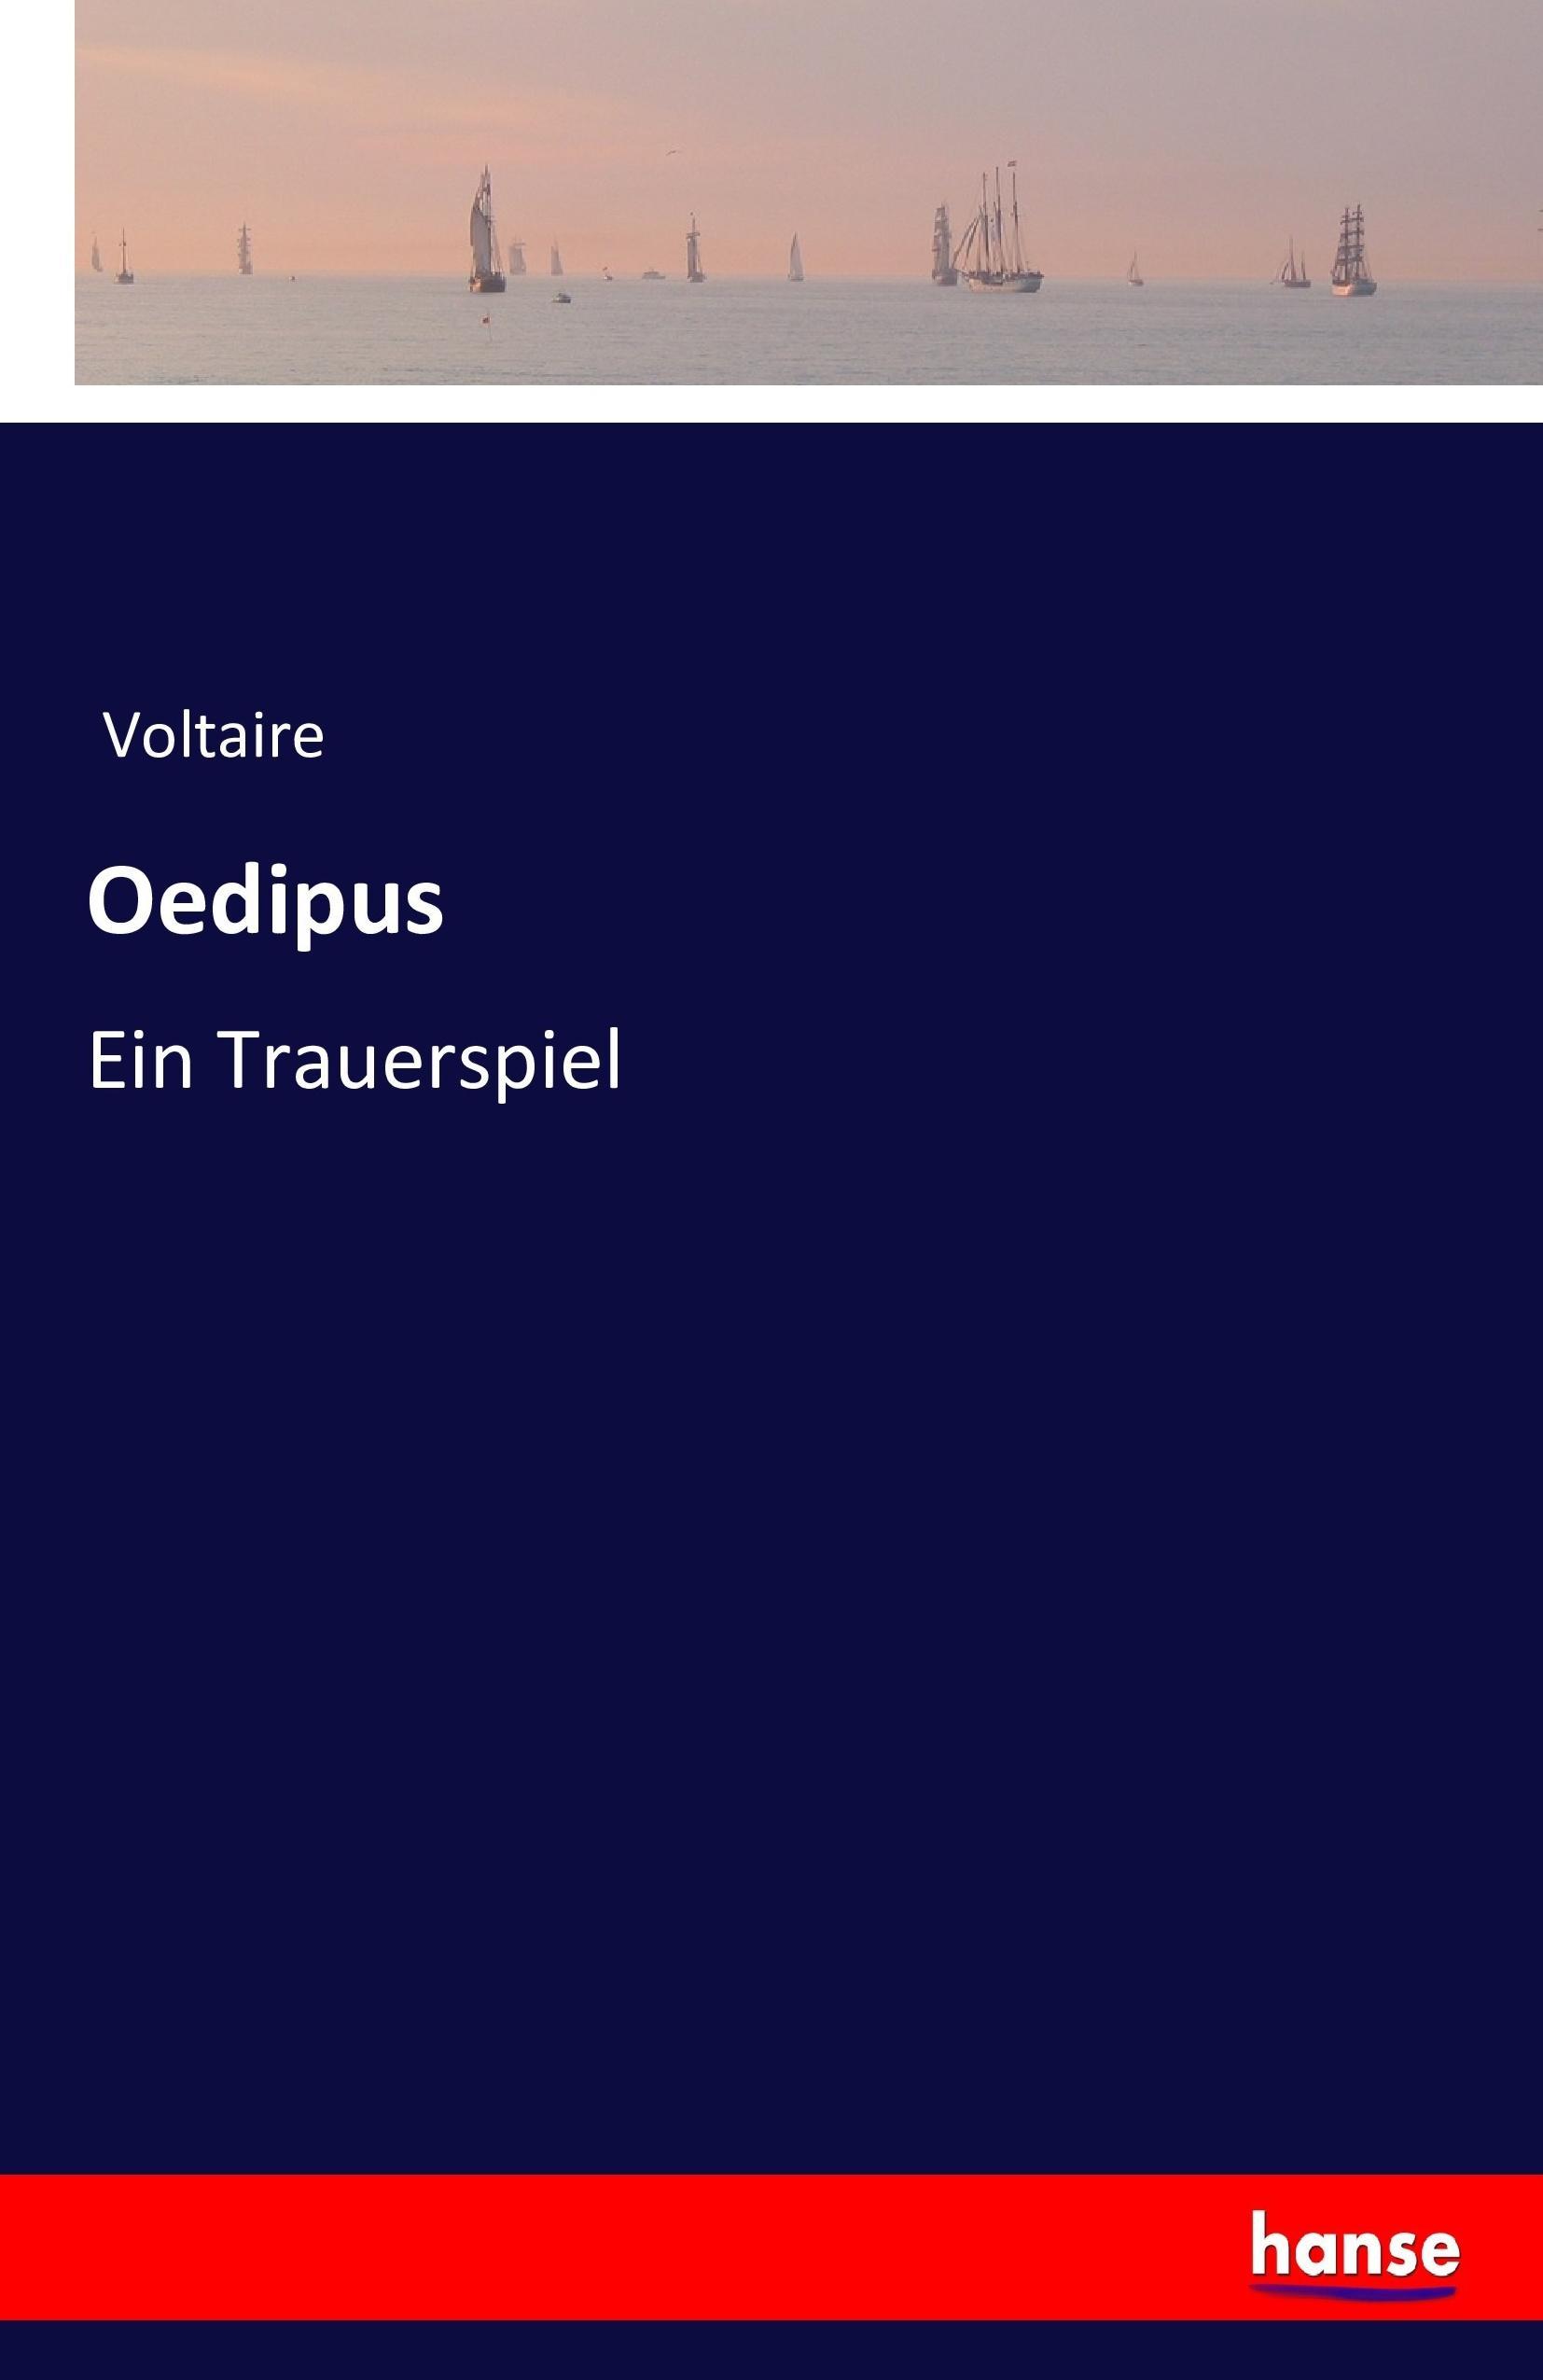 Oedipus | Ein Trauerspiel | Voltaire | Taschenbuch | Paperback | 92 S. | Deutsch | 2016 | hansebooks | EAN 9783743360730 - Voltaire